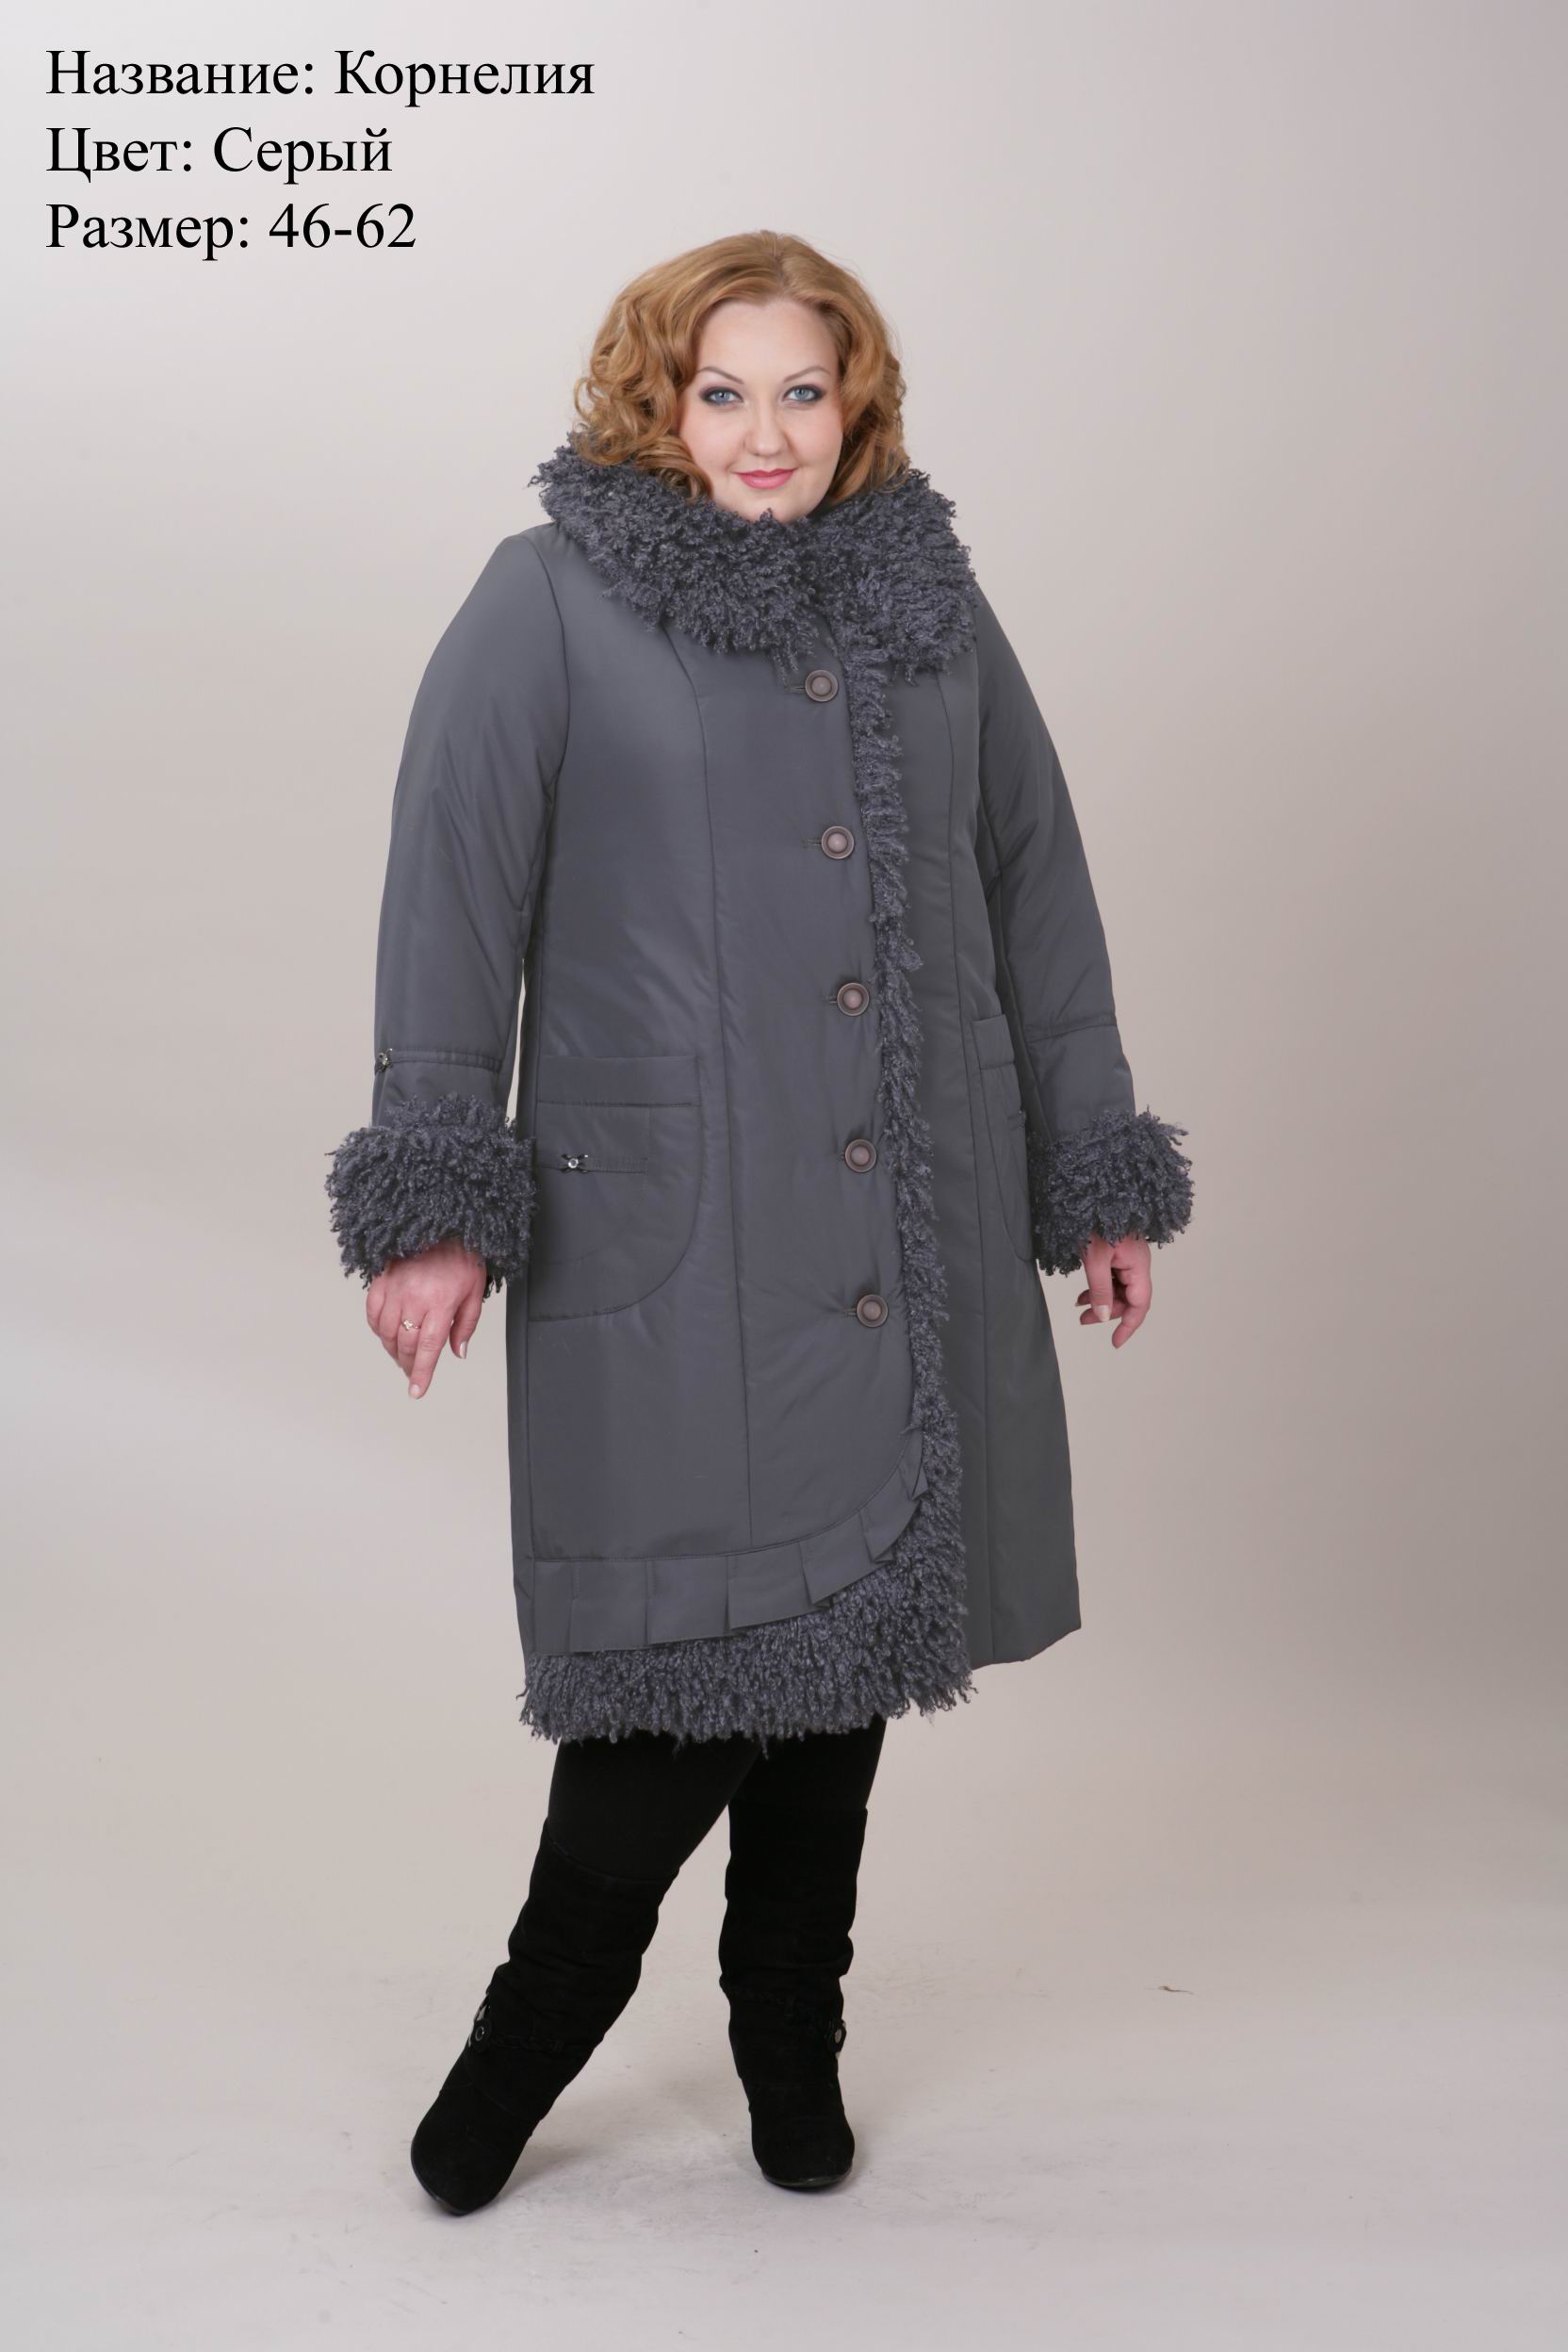 Женский зимнее пальто большого размера купить. Пальто женское зимнее 62 размер Бижур. Пальто женское больших размеров. Пальто зимнее женское 58 размер. Пальто зимнее женское больших размеров.